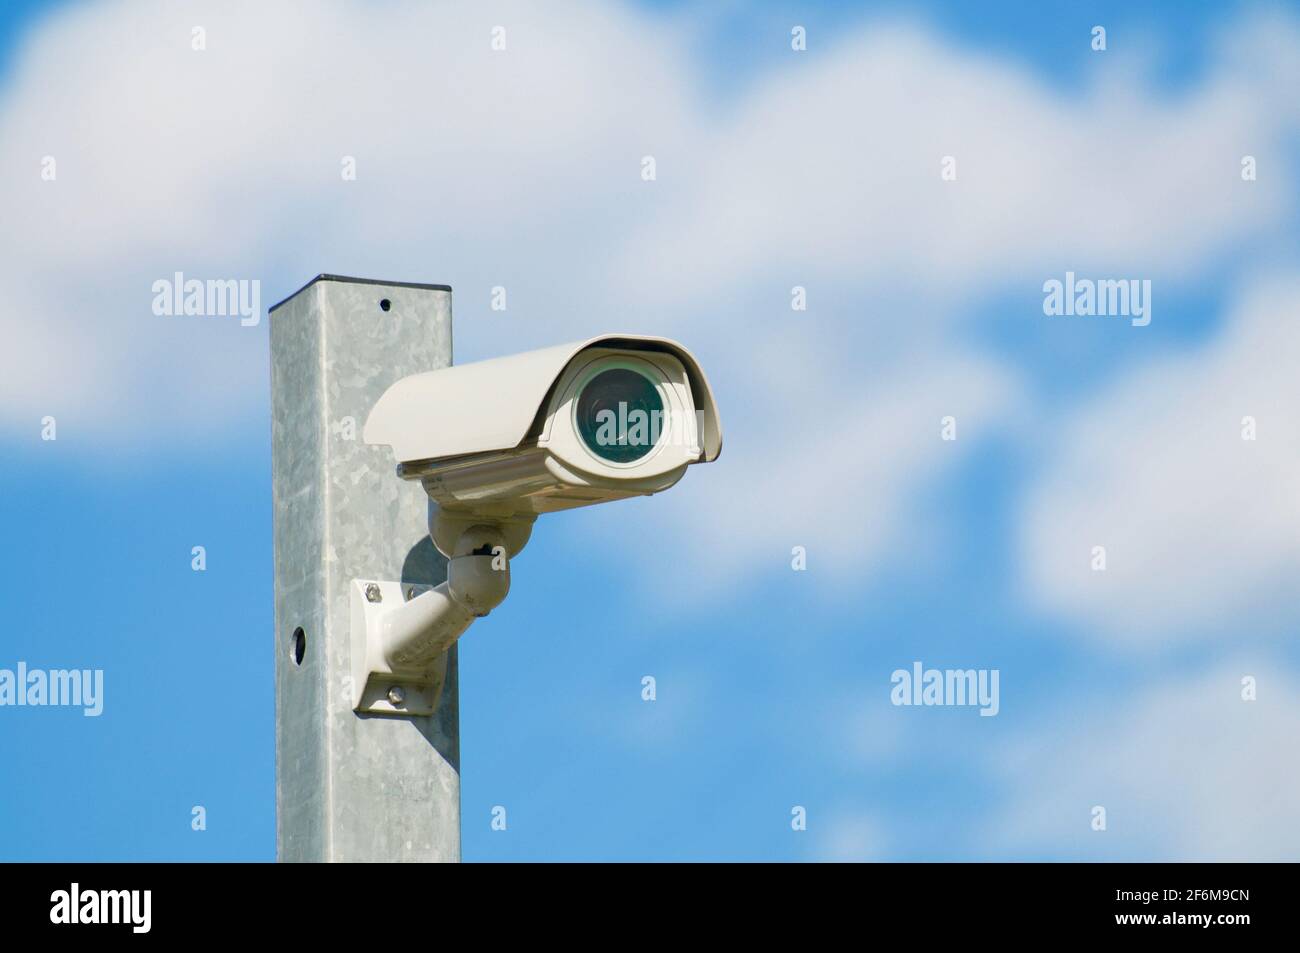 360 Grados La Cámara De Vigilancia En Un Poste, Cielo Con Nubes Fotos,  retratos, imágenes y fotografía de archivo libres de derecho. Image 12883422